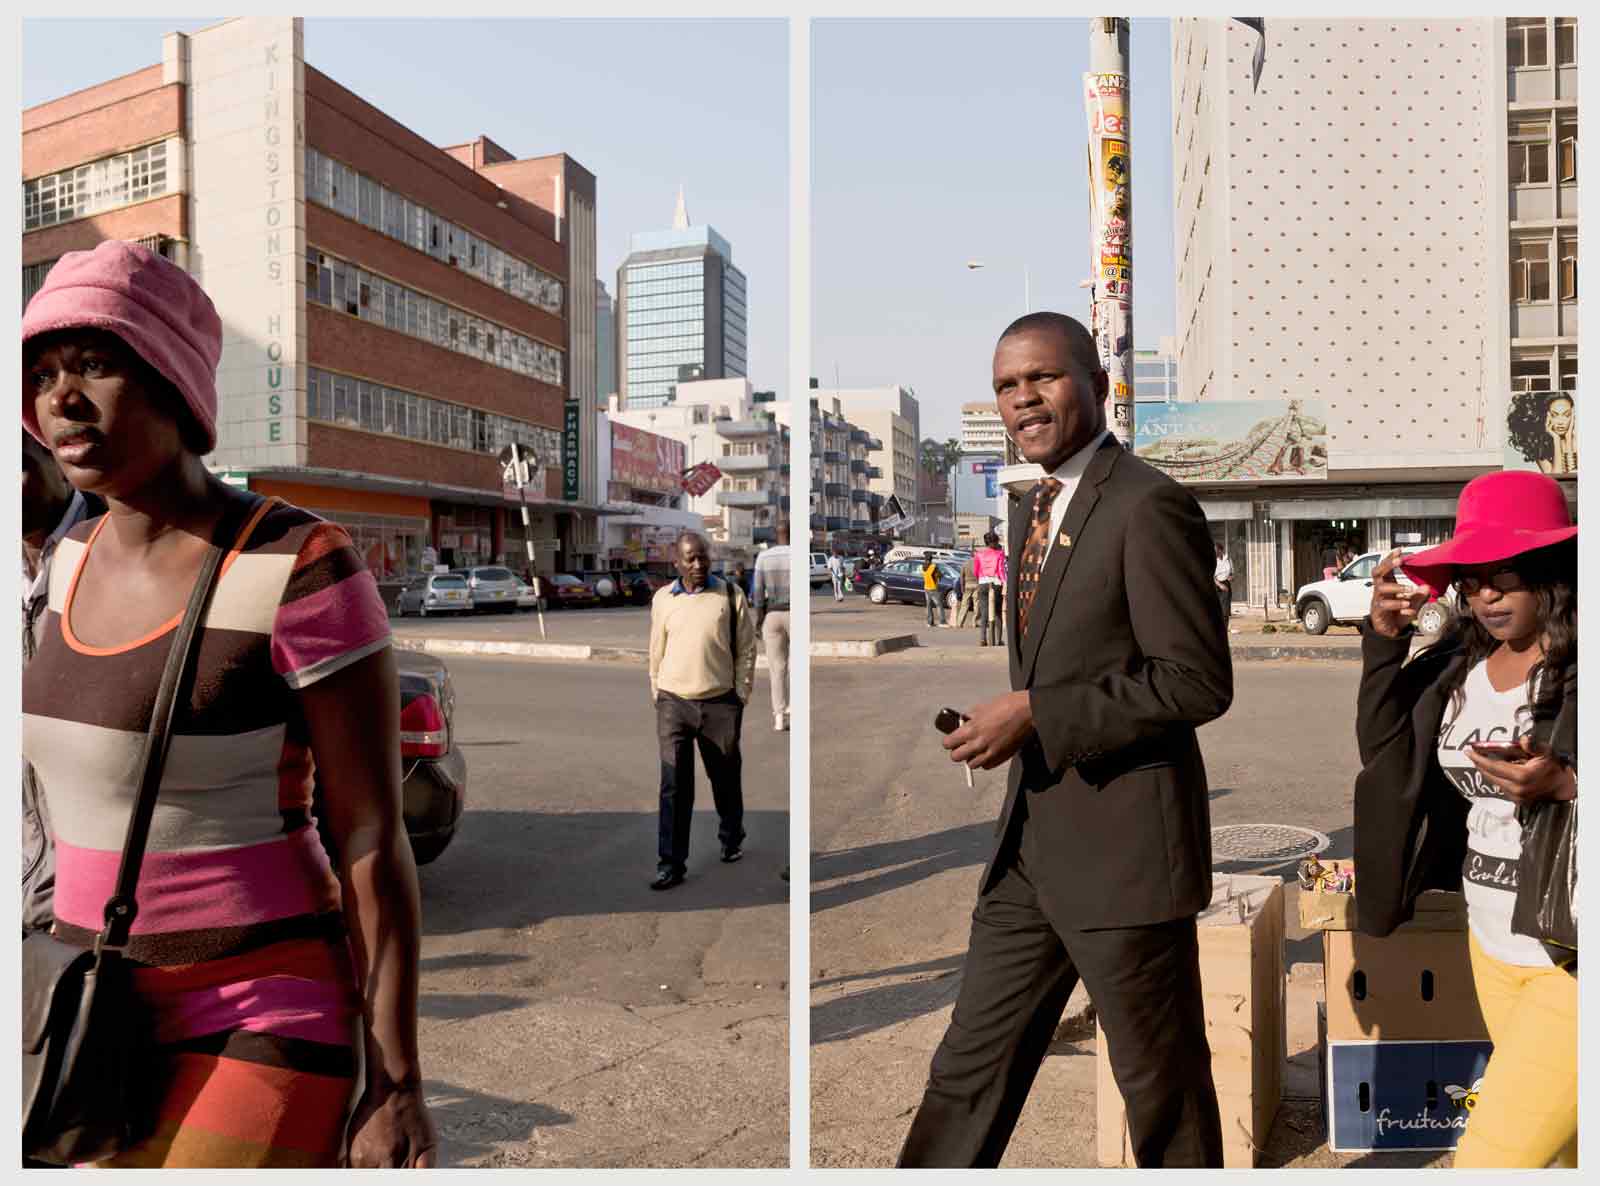 Guy Tillim: Union Avenue, Harare, Zimbabwe, 2016